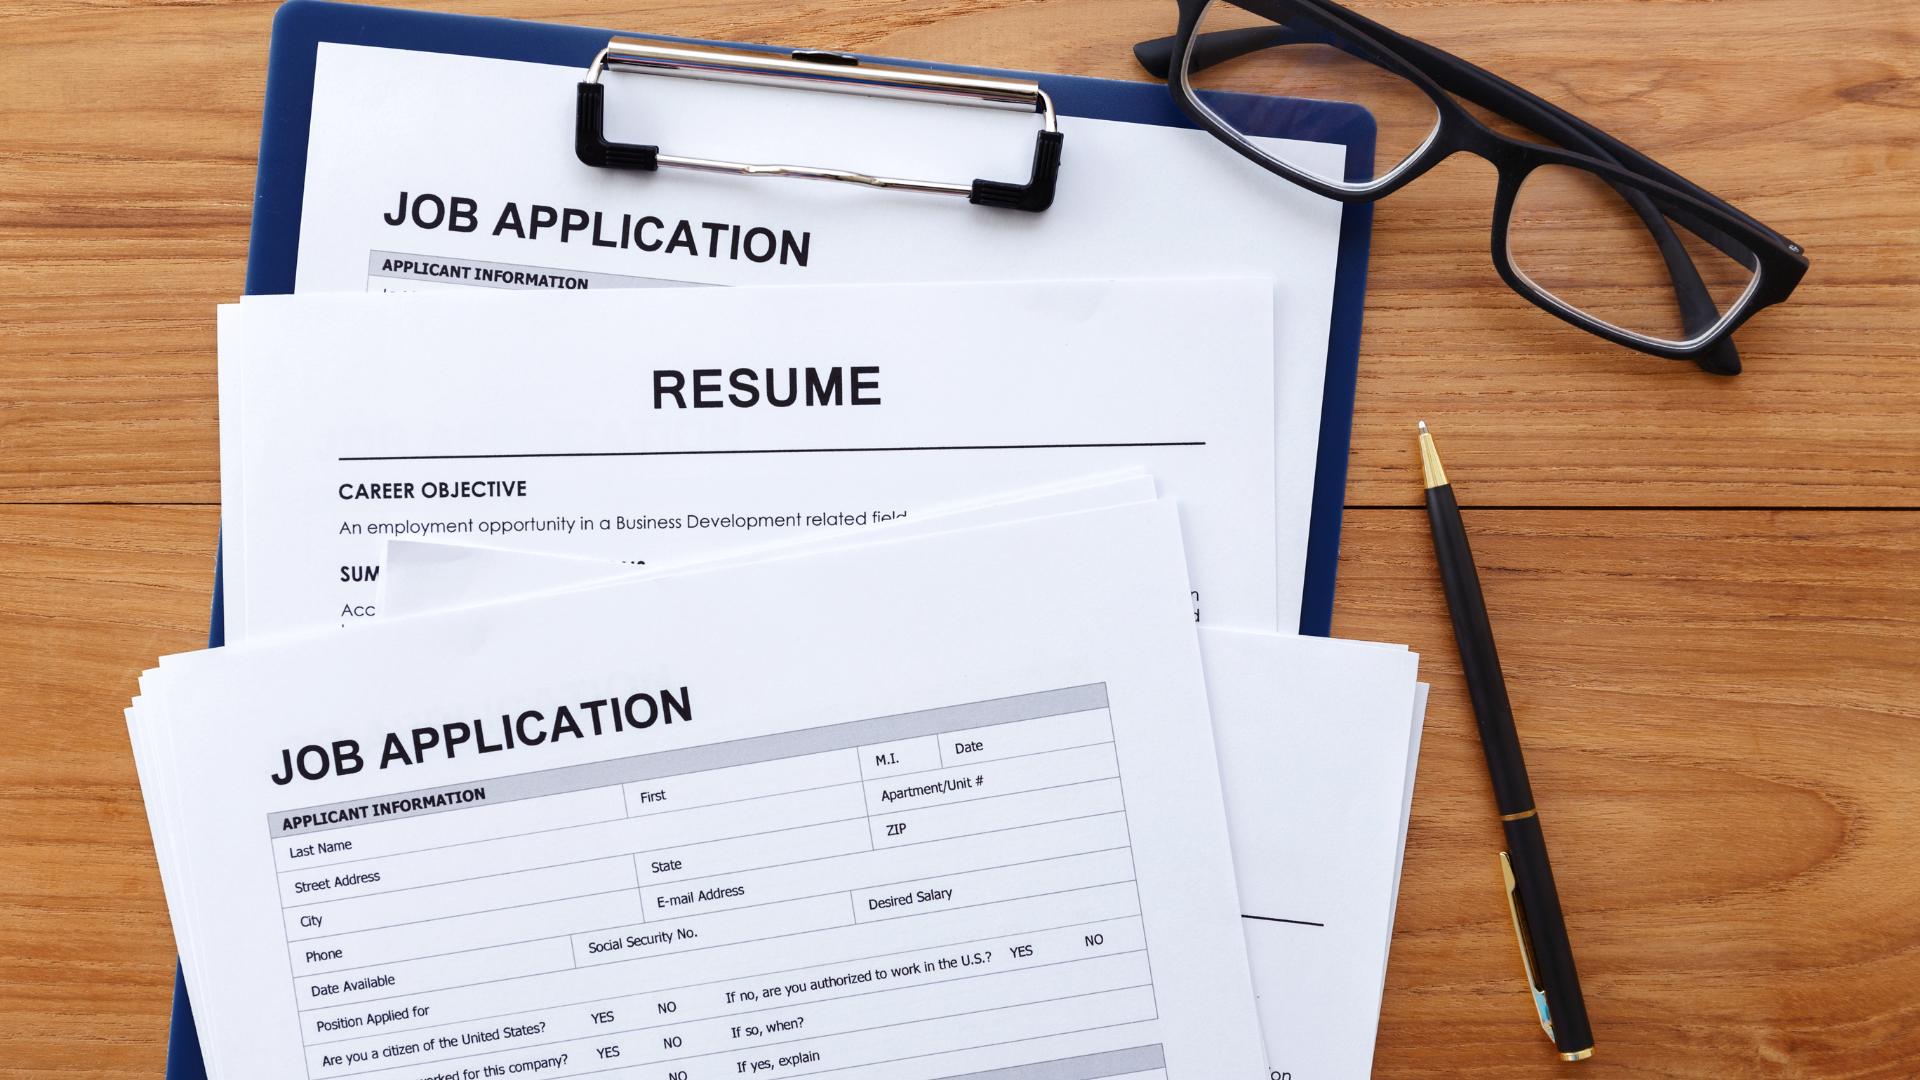 Resumes and job applications